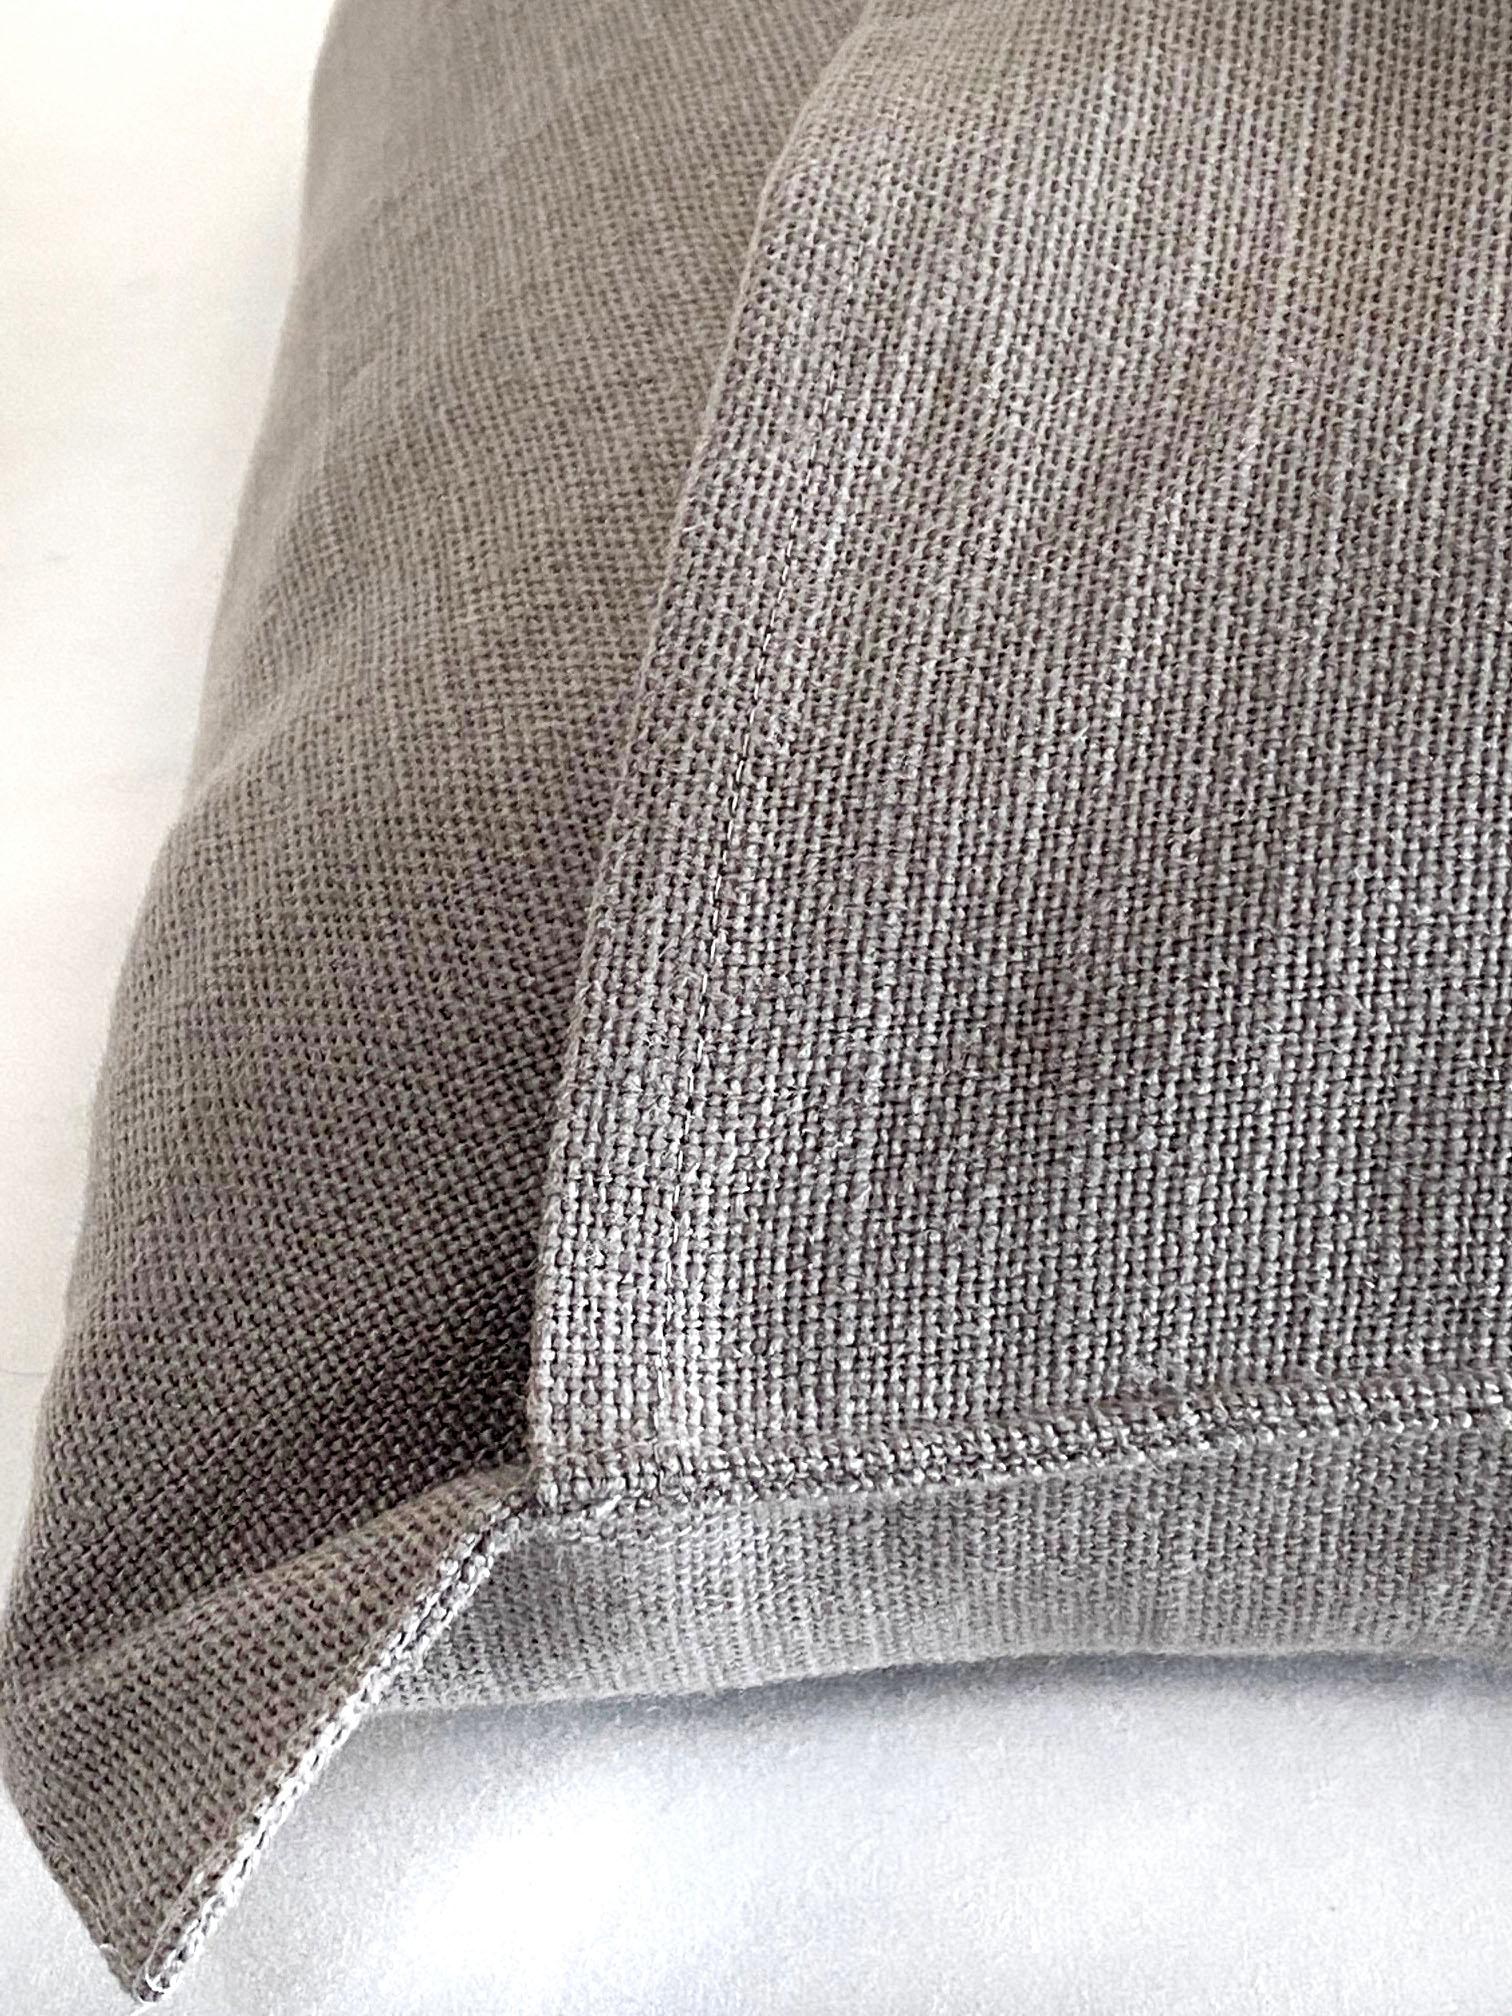 European Stone Gray Belgian Linen Accent Pillow